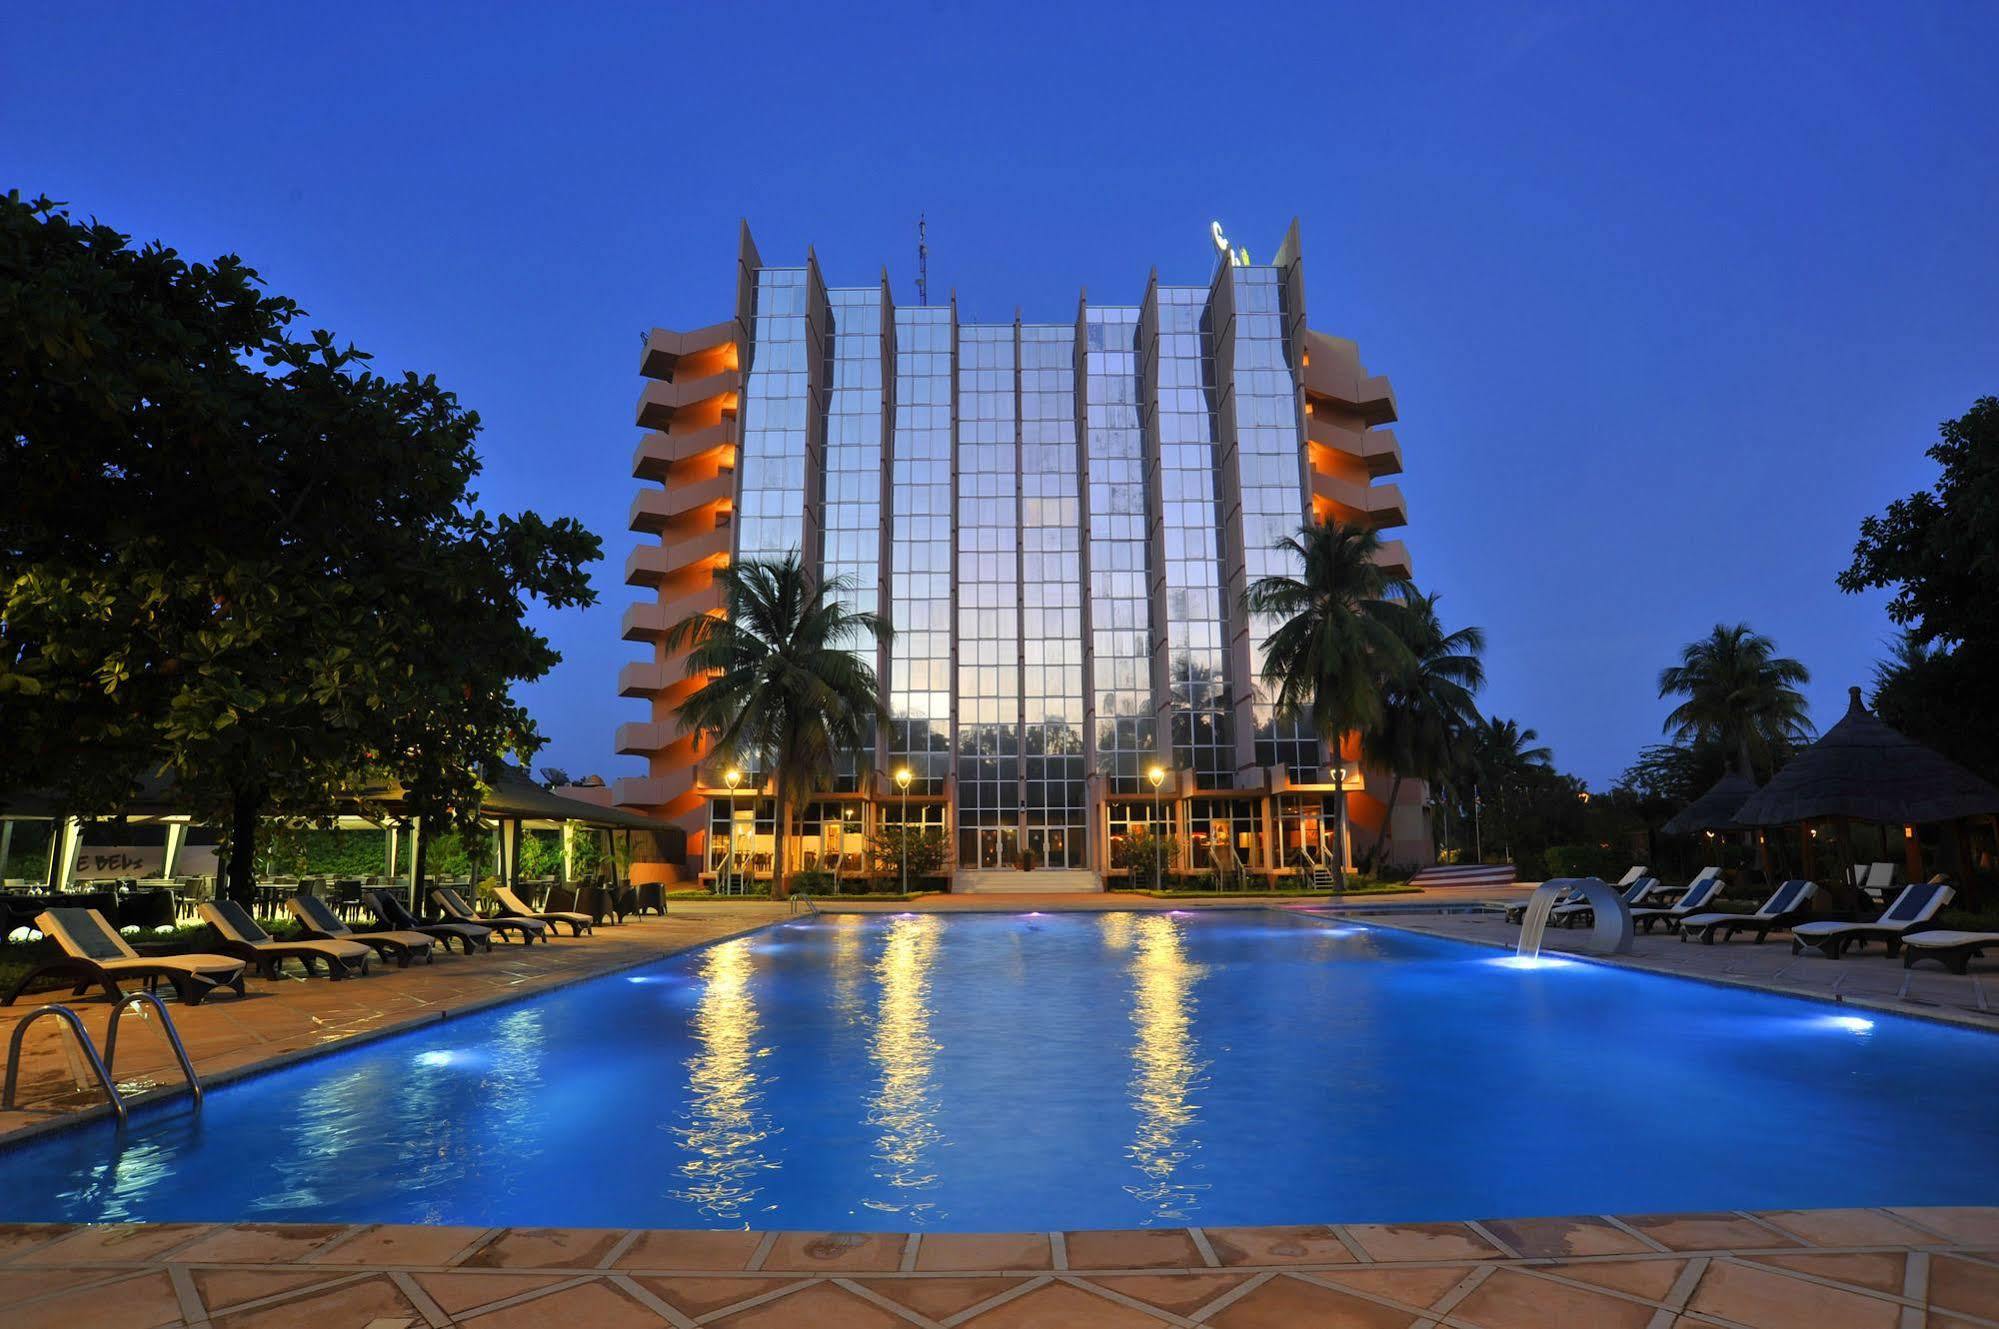 Sopatel Silmande Ξενοδοχείο Ουαγκαντουγκού Εξωτερικό φωτογραφία